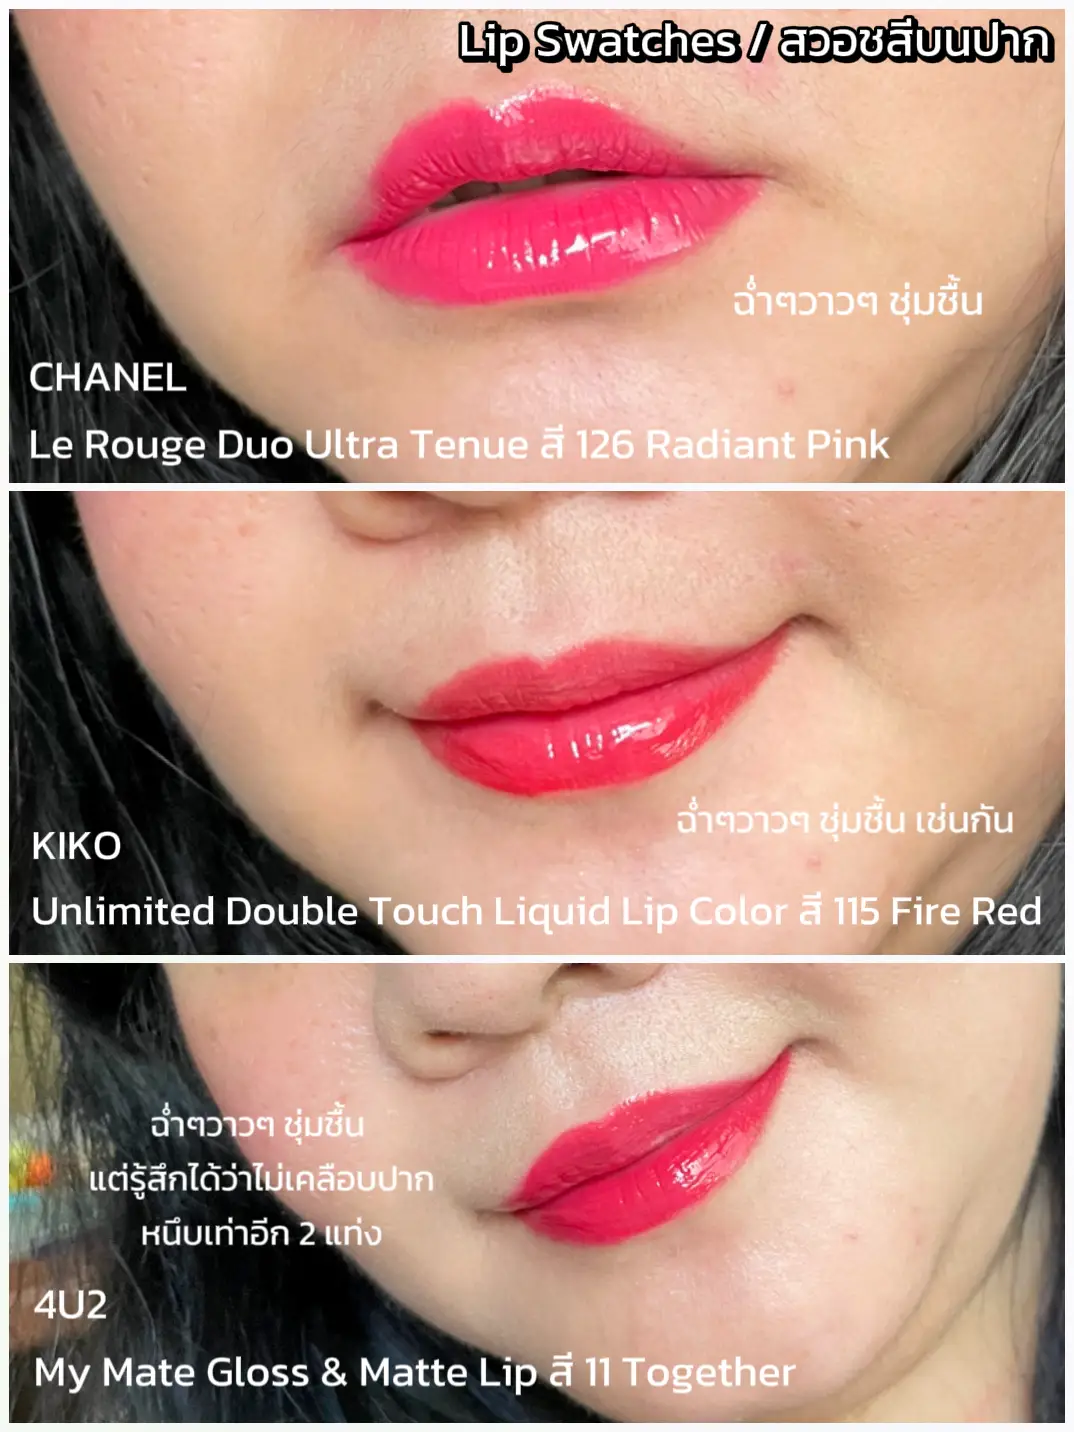 Compare LIP duo CHANEL vs KIKO vs 4U2 fine form 👌, Gallery posted by  lipstickfairy